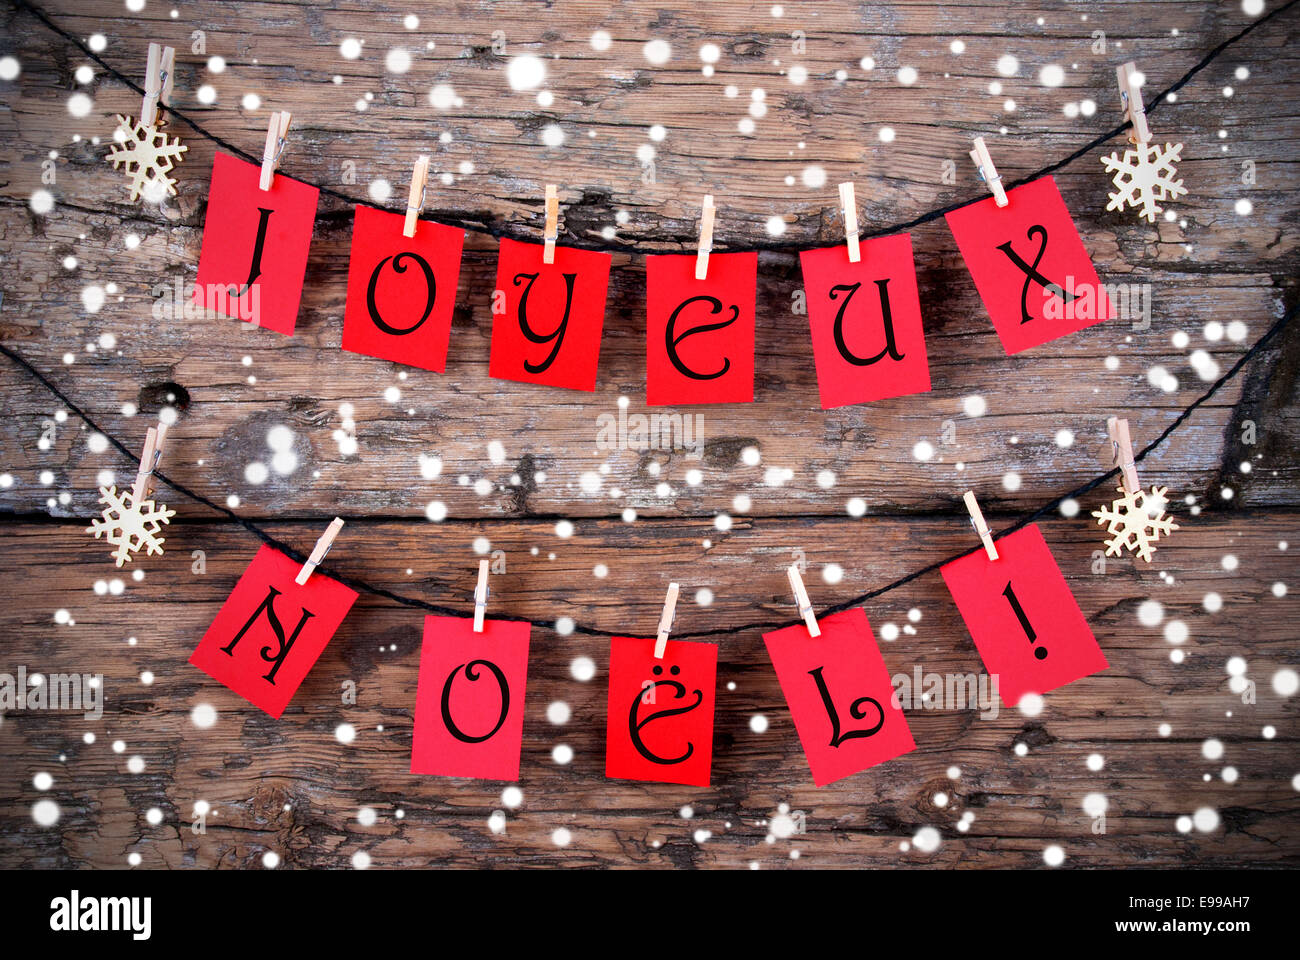 Verschneite Weihnachten Hintergrund mit der französischen Wörter Joyeux Noël auf rot-Tags, d.h. frohe Weihnachten Stockfoto